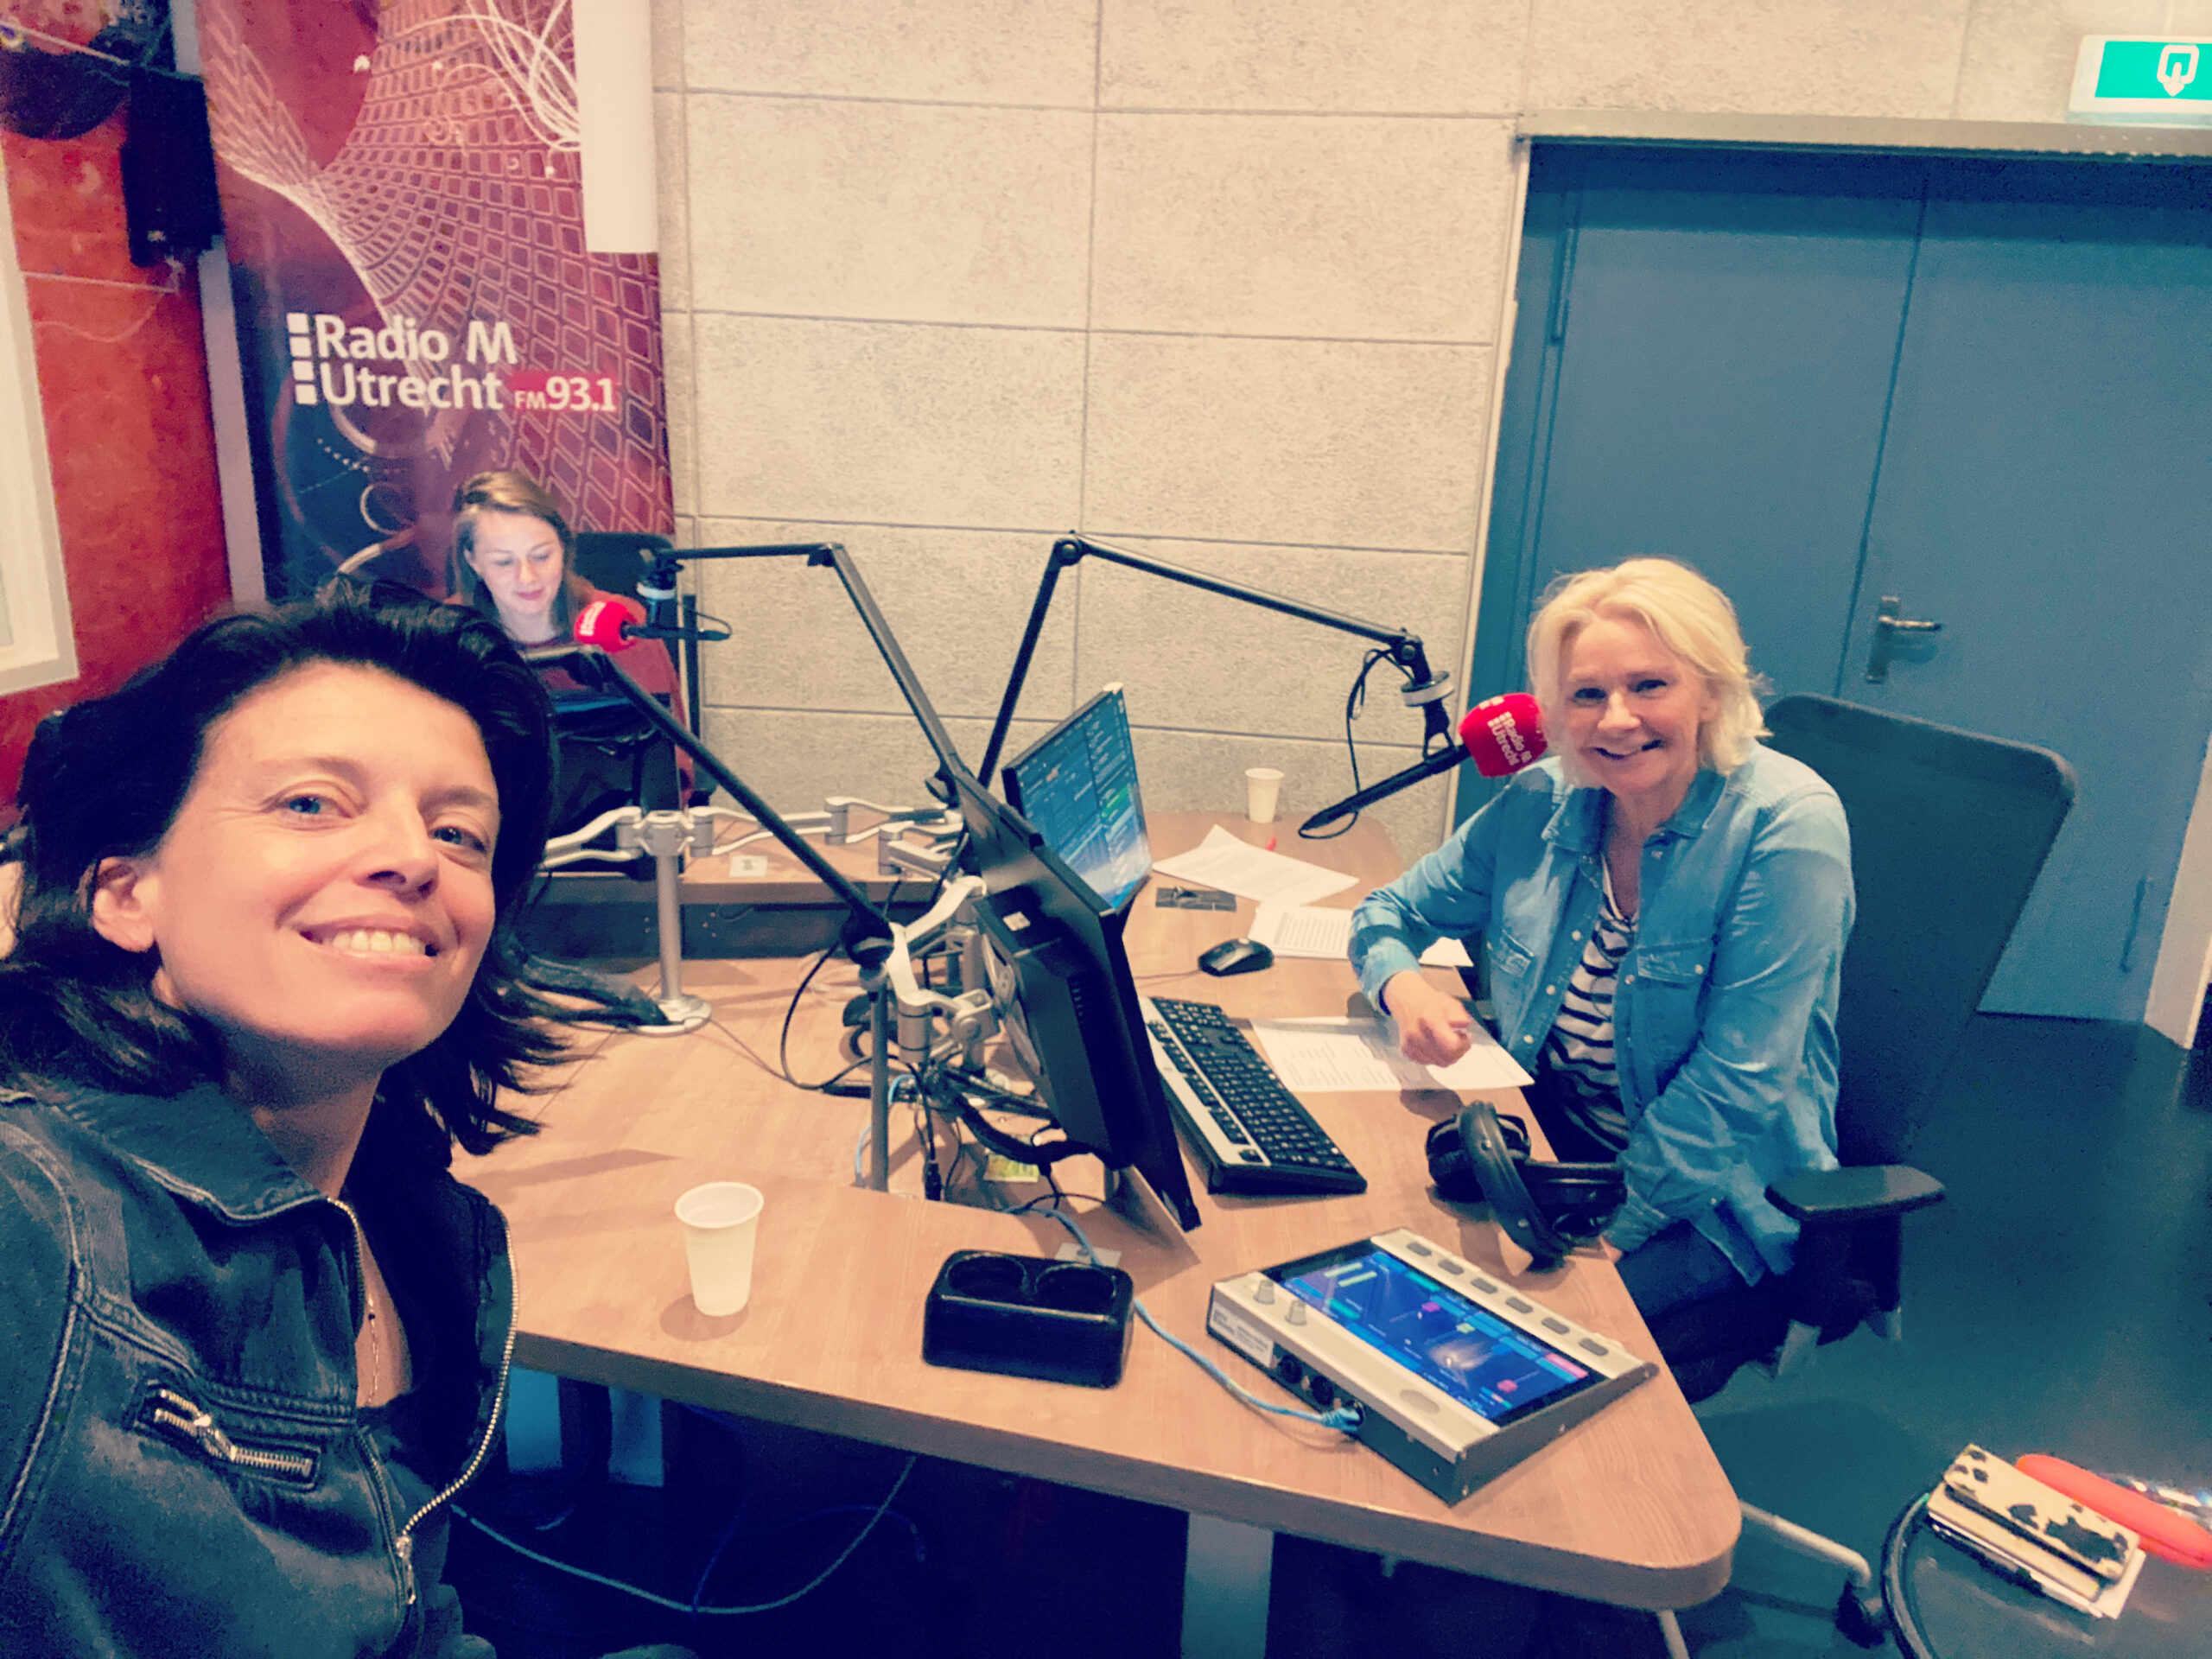 Middagzwemmers – de podcast bij Radio M Utrecht